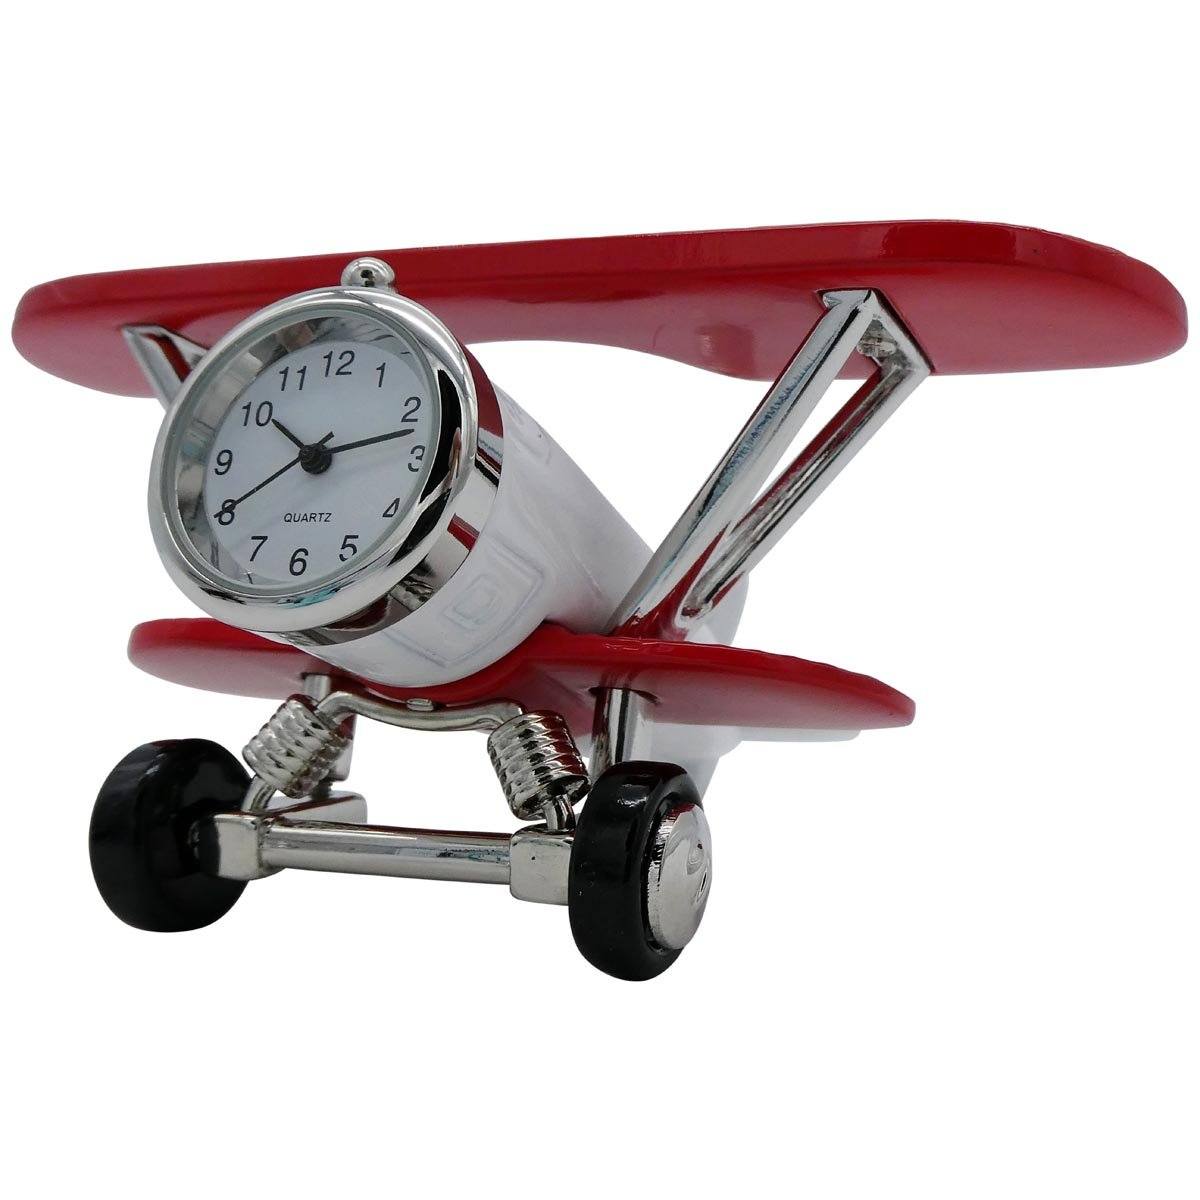 Pilot Toys White and Red Biplane Desk Clock - PilotMall.com